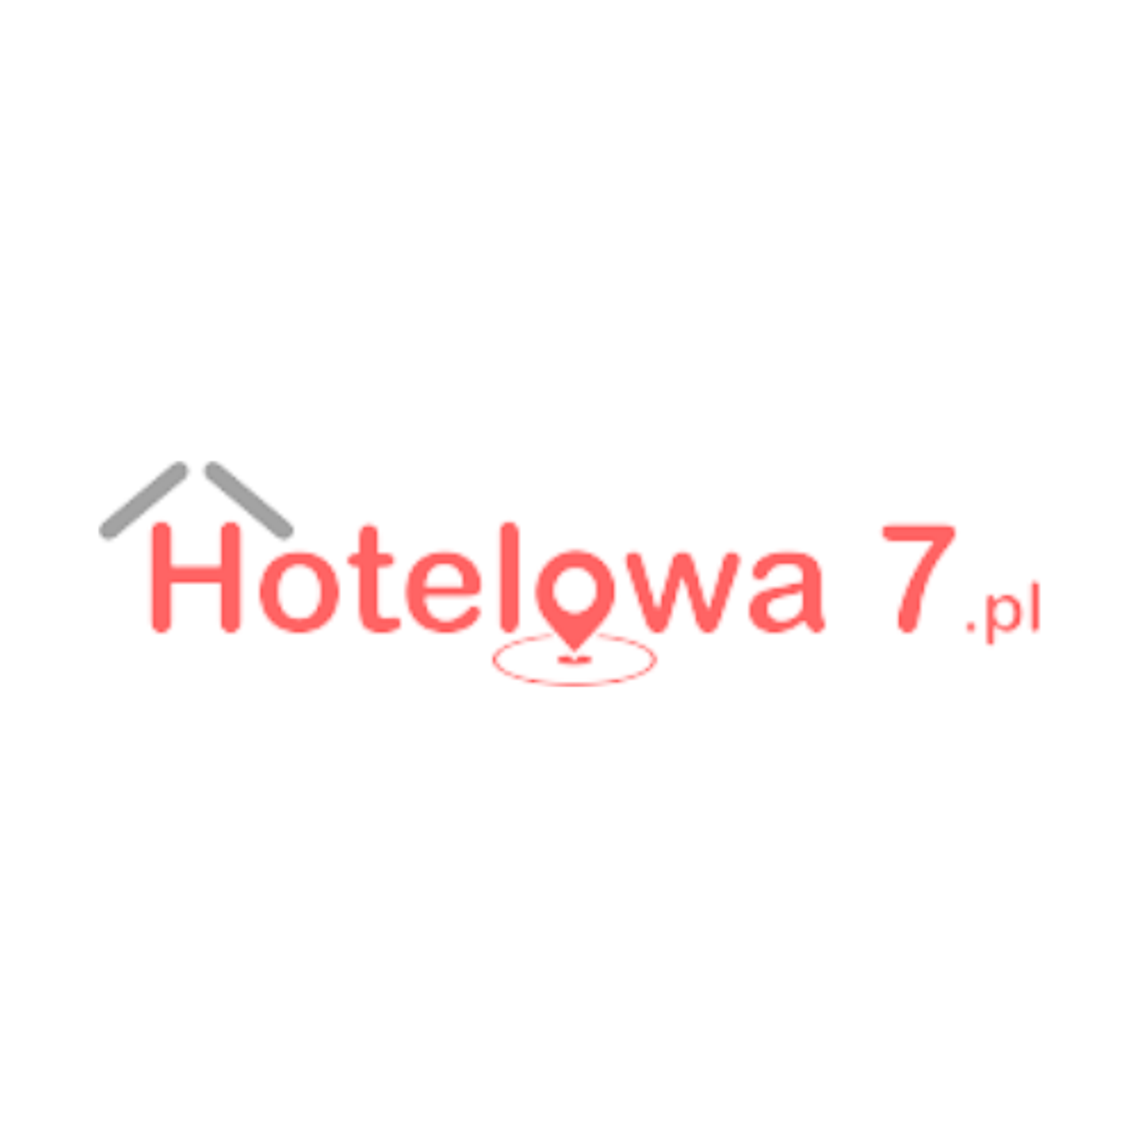 Hotelowa7.pl